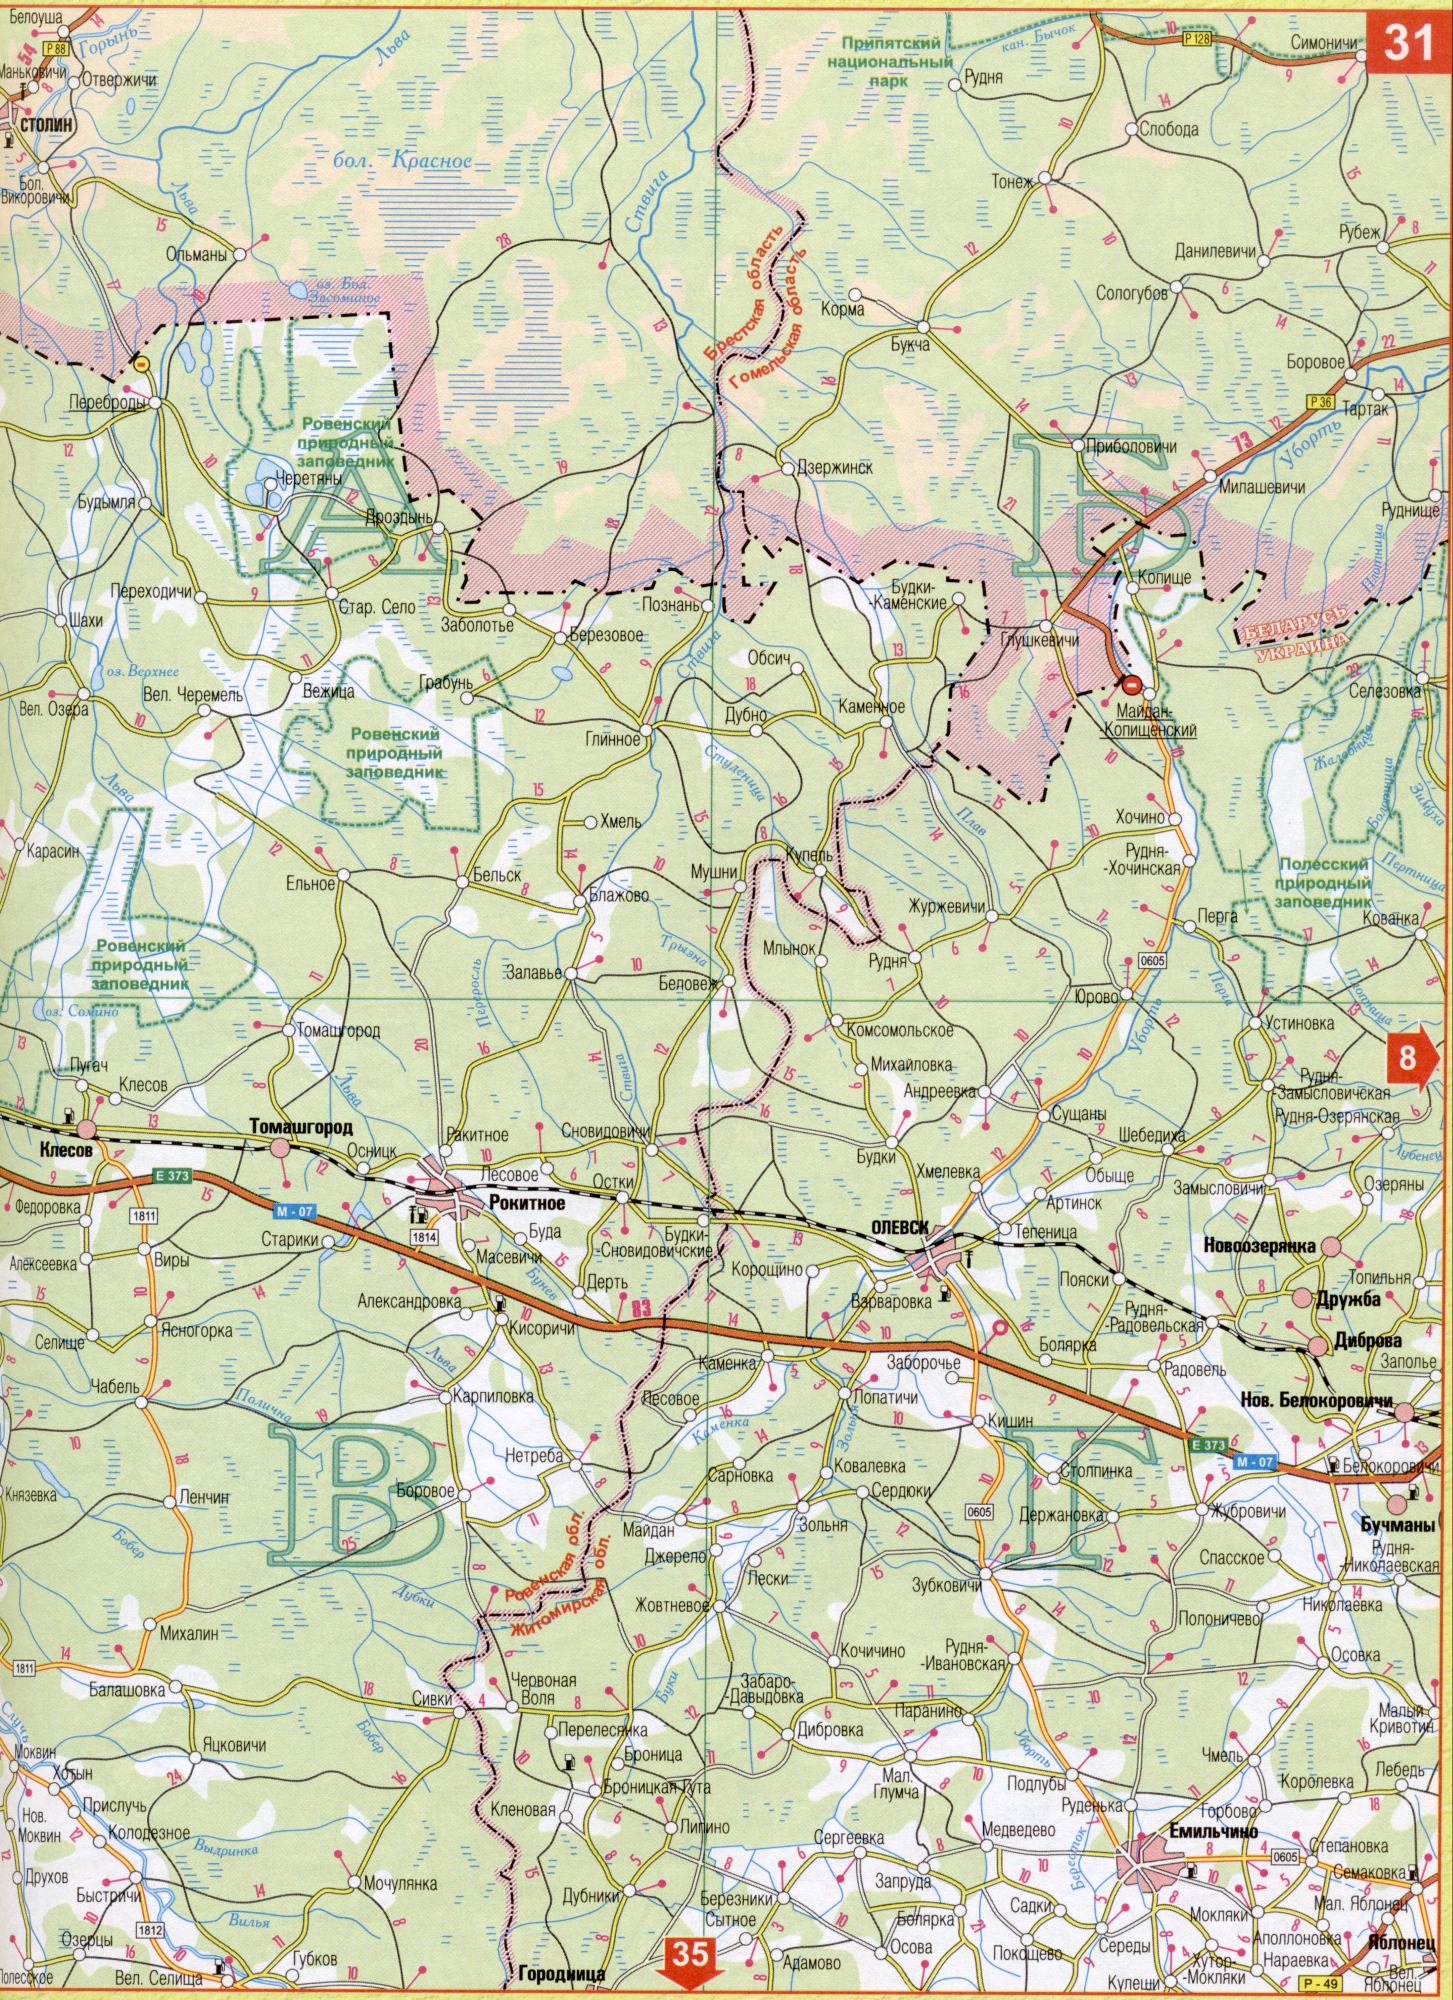 Карта Волынской области Украины масштаба 1см - 5км. Подробная карта авто дорог - Волынская область. Скачать бесплатно , D0